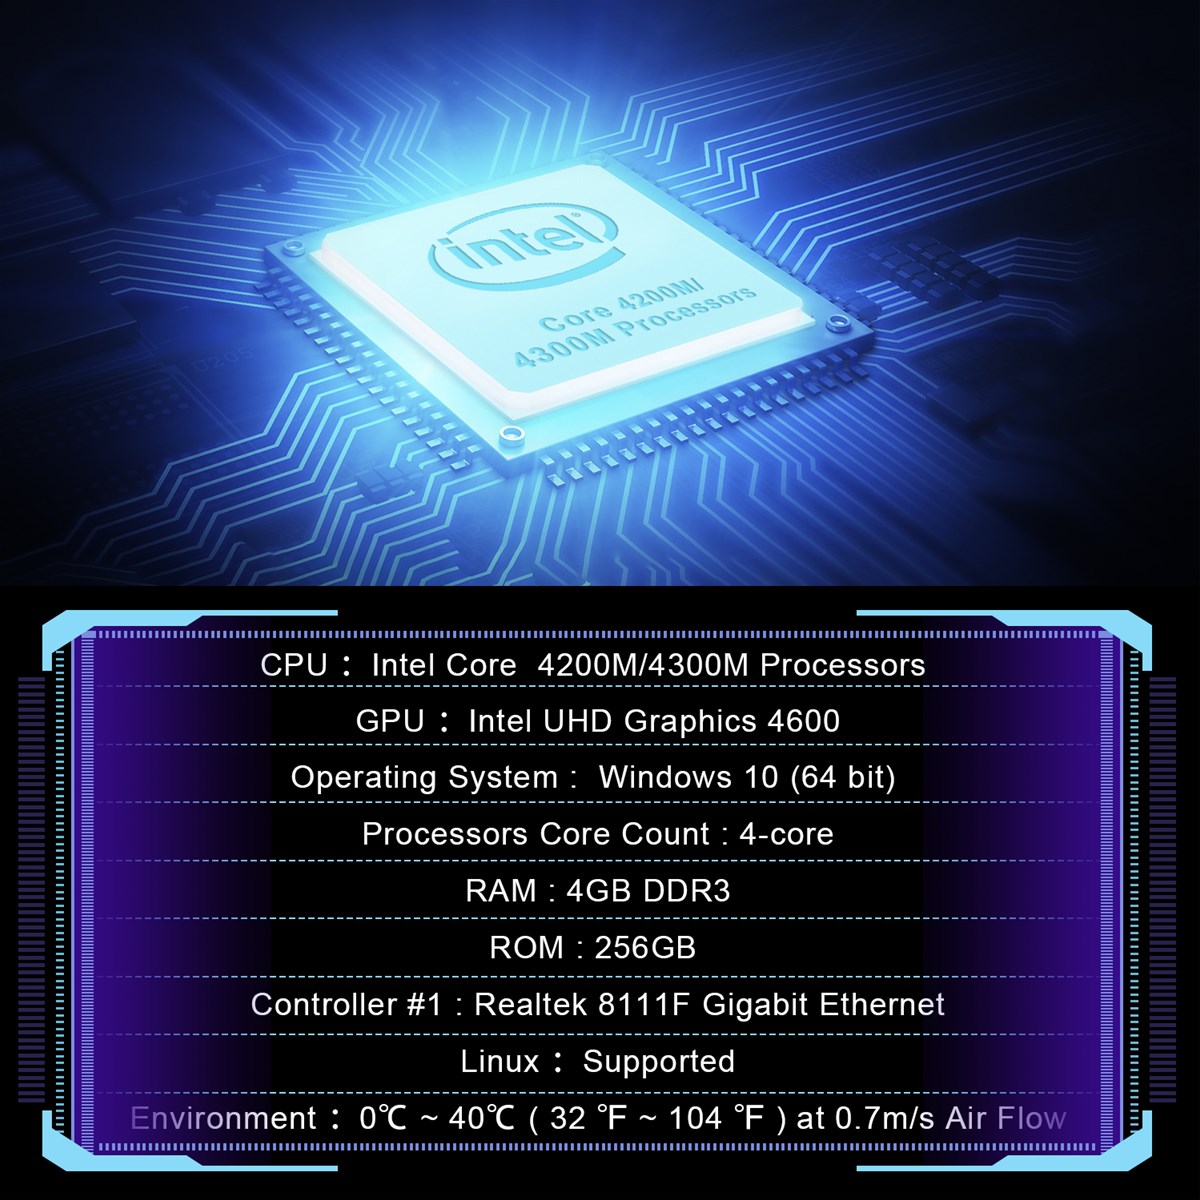 allinone mini pc win10 4GB RAM 256GB ROM Intel Core 4200M 4300M Processor wintel mini pc allinone office computer